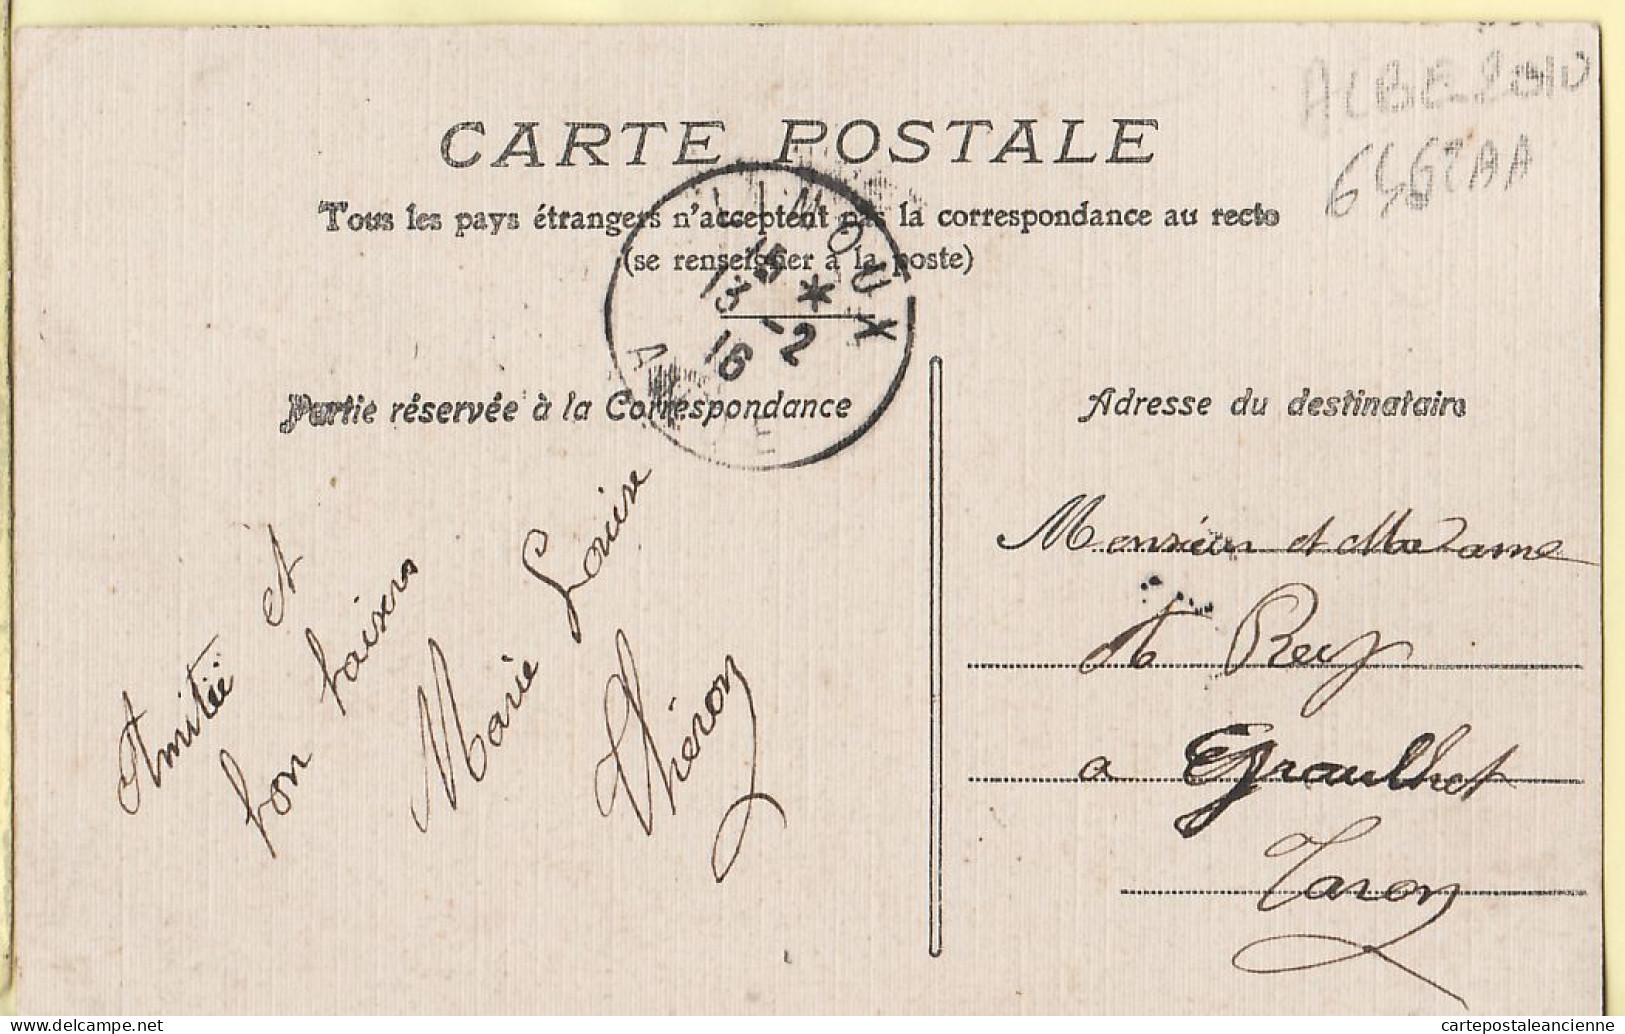 19559 /   ️ Peu Commun LIMOUX Aude Chaussée Moulin De SOURNIES Carte Toilée 1916 à REY GraulheE De FOIX 1930s- H - Limoux